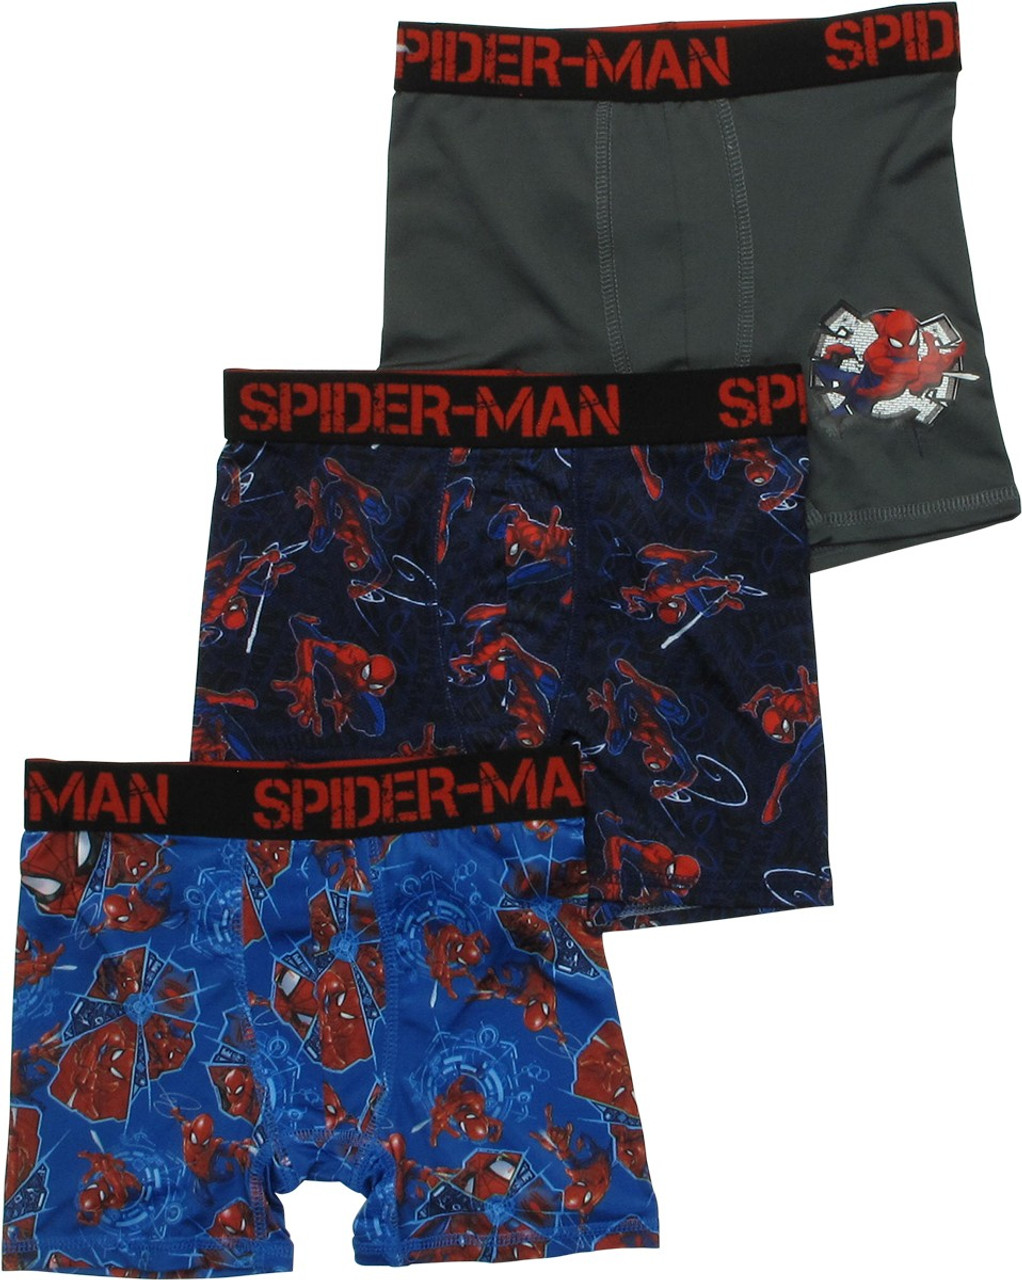 Made in Korea Spider Boy's Spanned Underwear (Running, Square